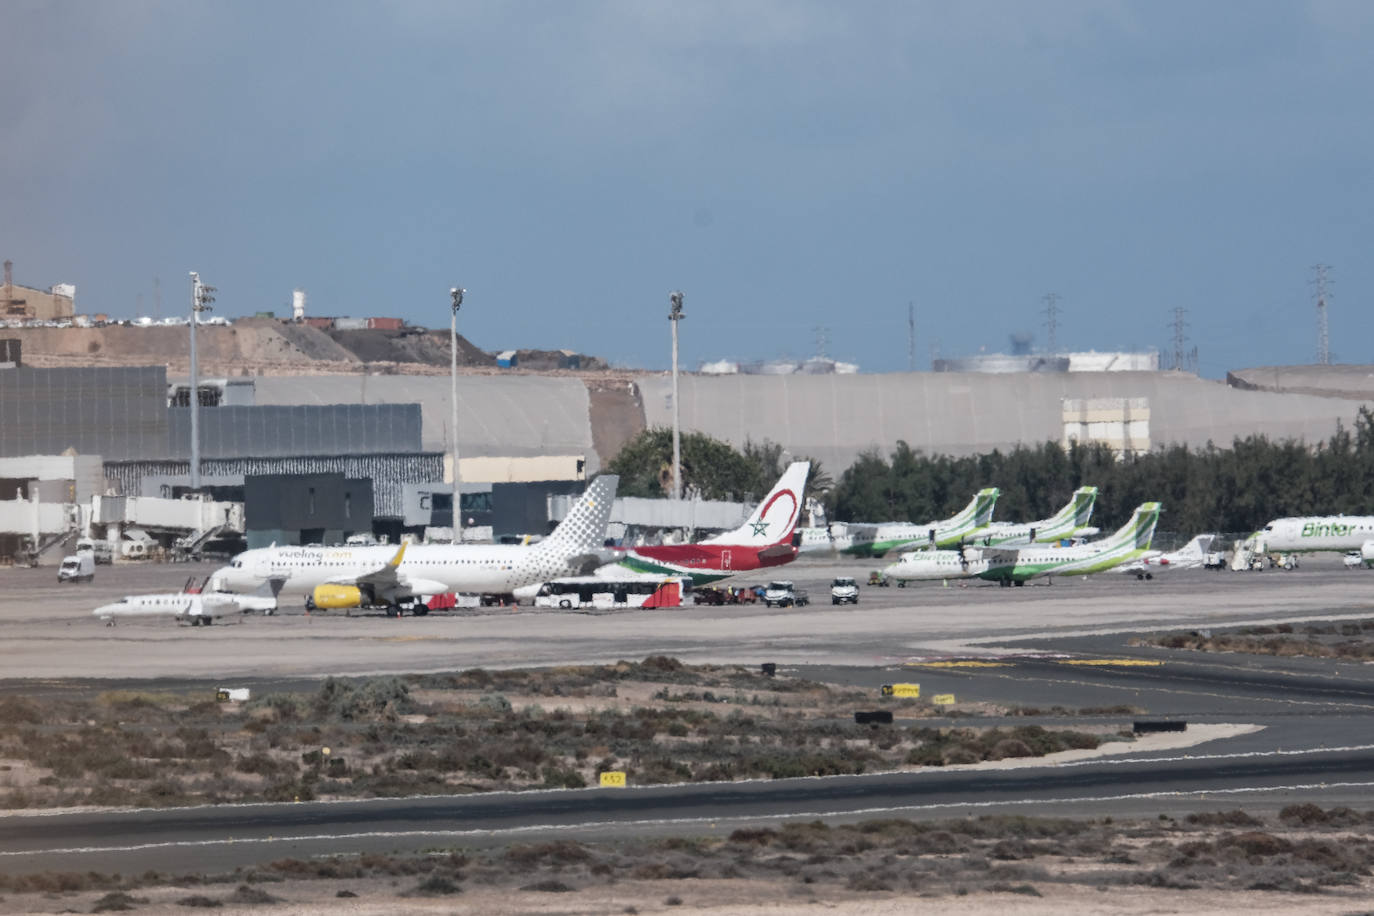 Debacle en los aeropuertos canarios: 28 millones de pasajeros perdidos en 2020